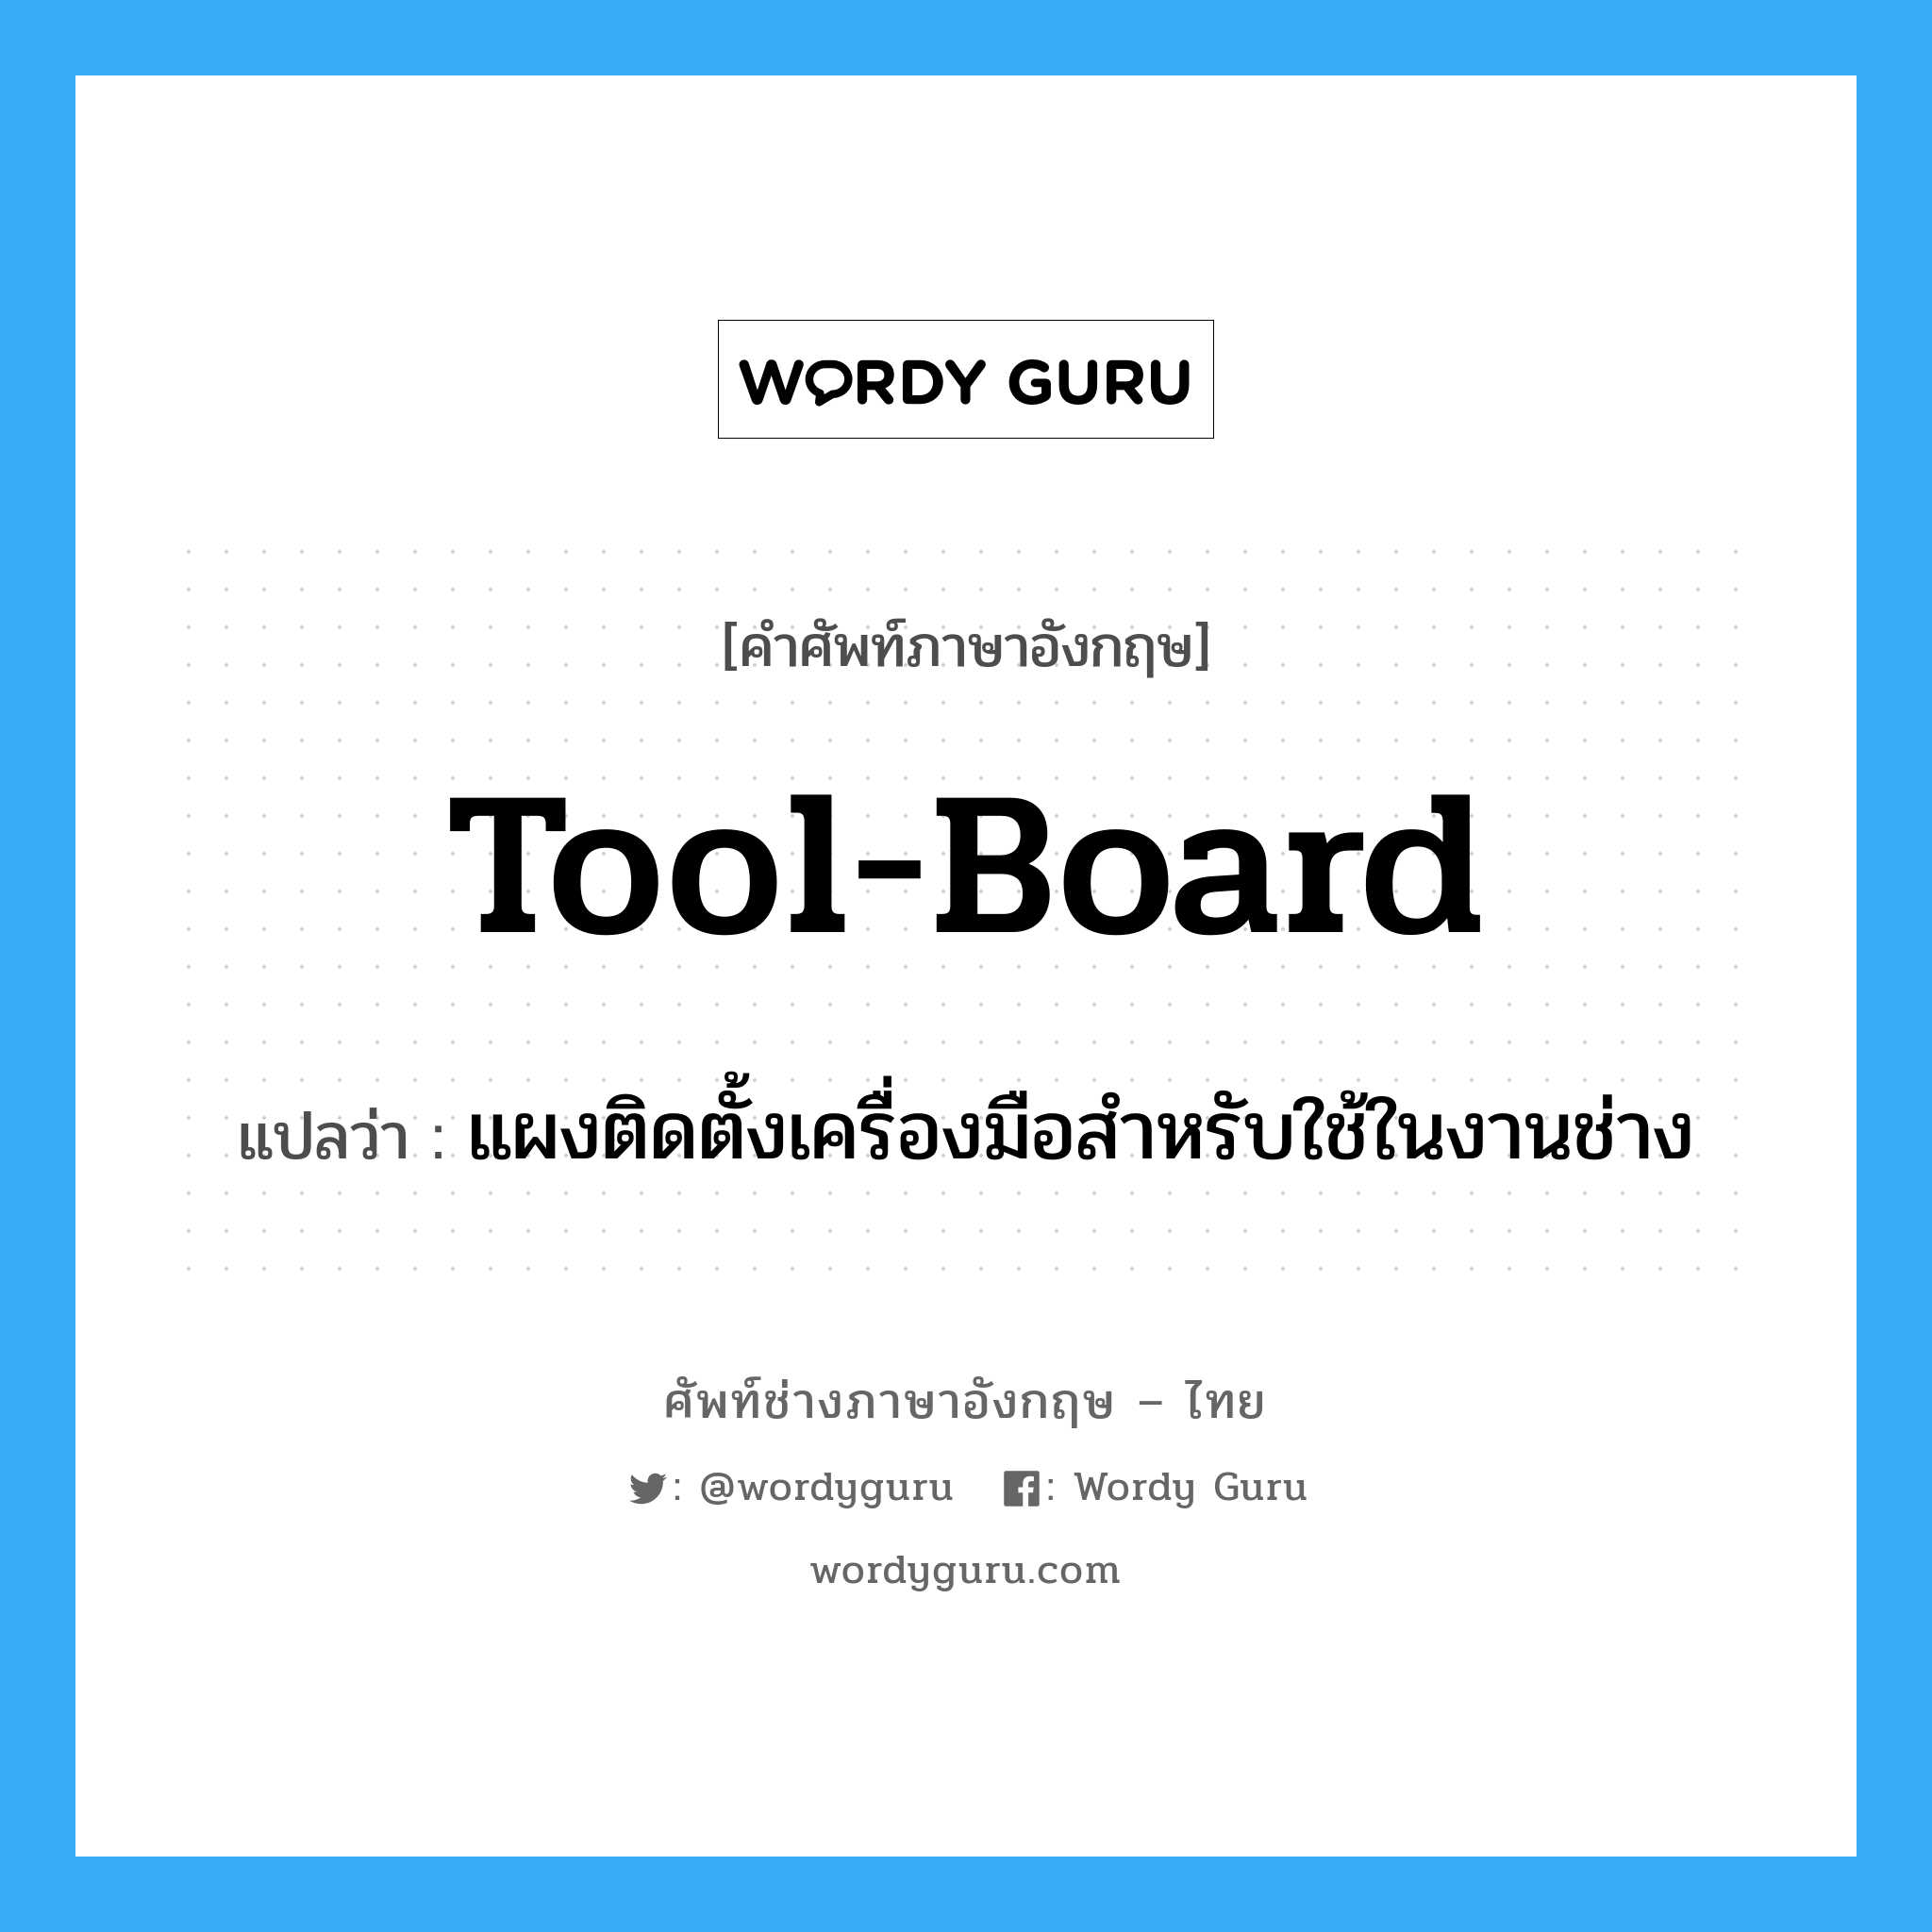 แผงติดตั้งเครื่องมือสำหรับใช้ในงานช่าง ภาษาอังกฤษ?, คำศัพท์ช่างภาษาอังกฤษ - ไทย แผงติดตั้งเครื่องมือสำหรับใช้ในงานช่าง คำศัพท์ภาษาอังกฤษ แผงติดตั้งเครื่องมือสำหรับใช้ในงานช่าง แปลว่า tool-board